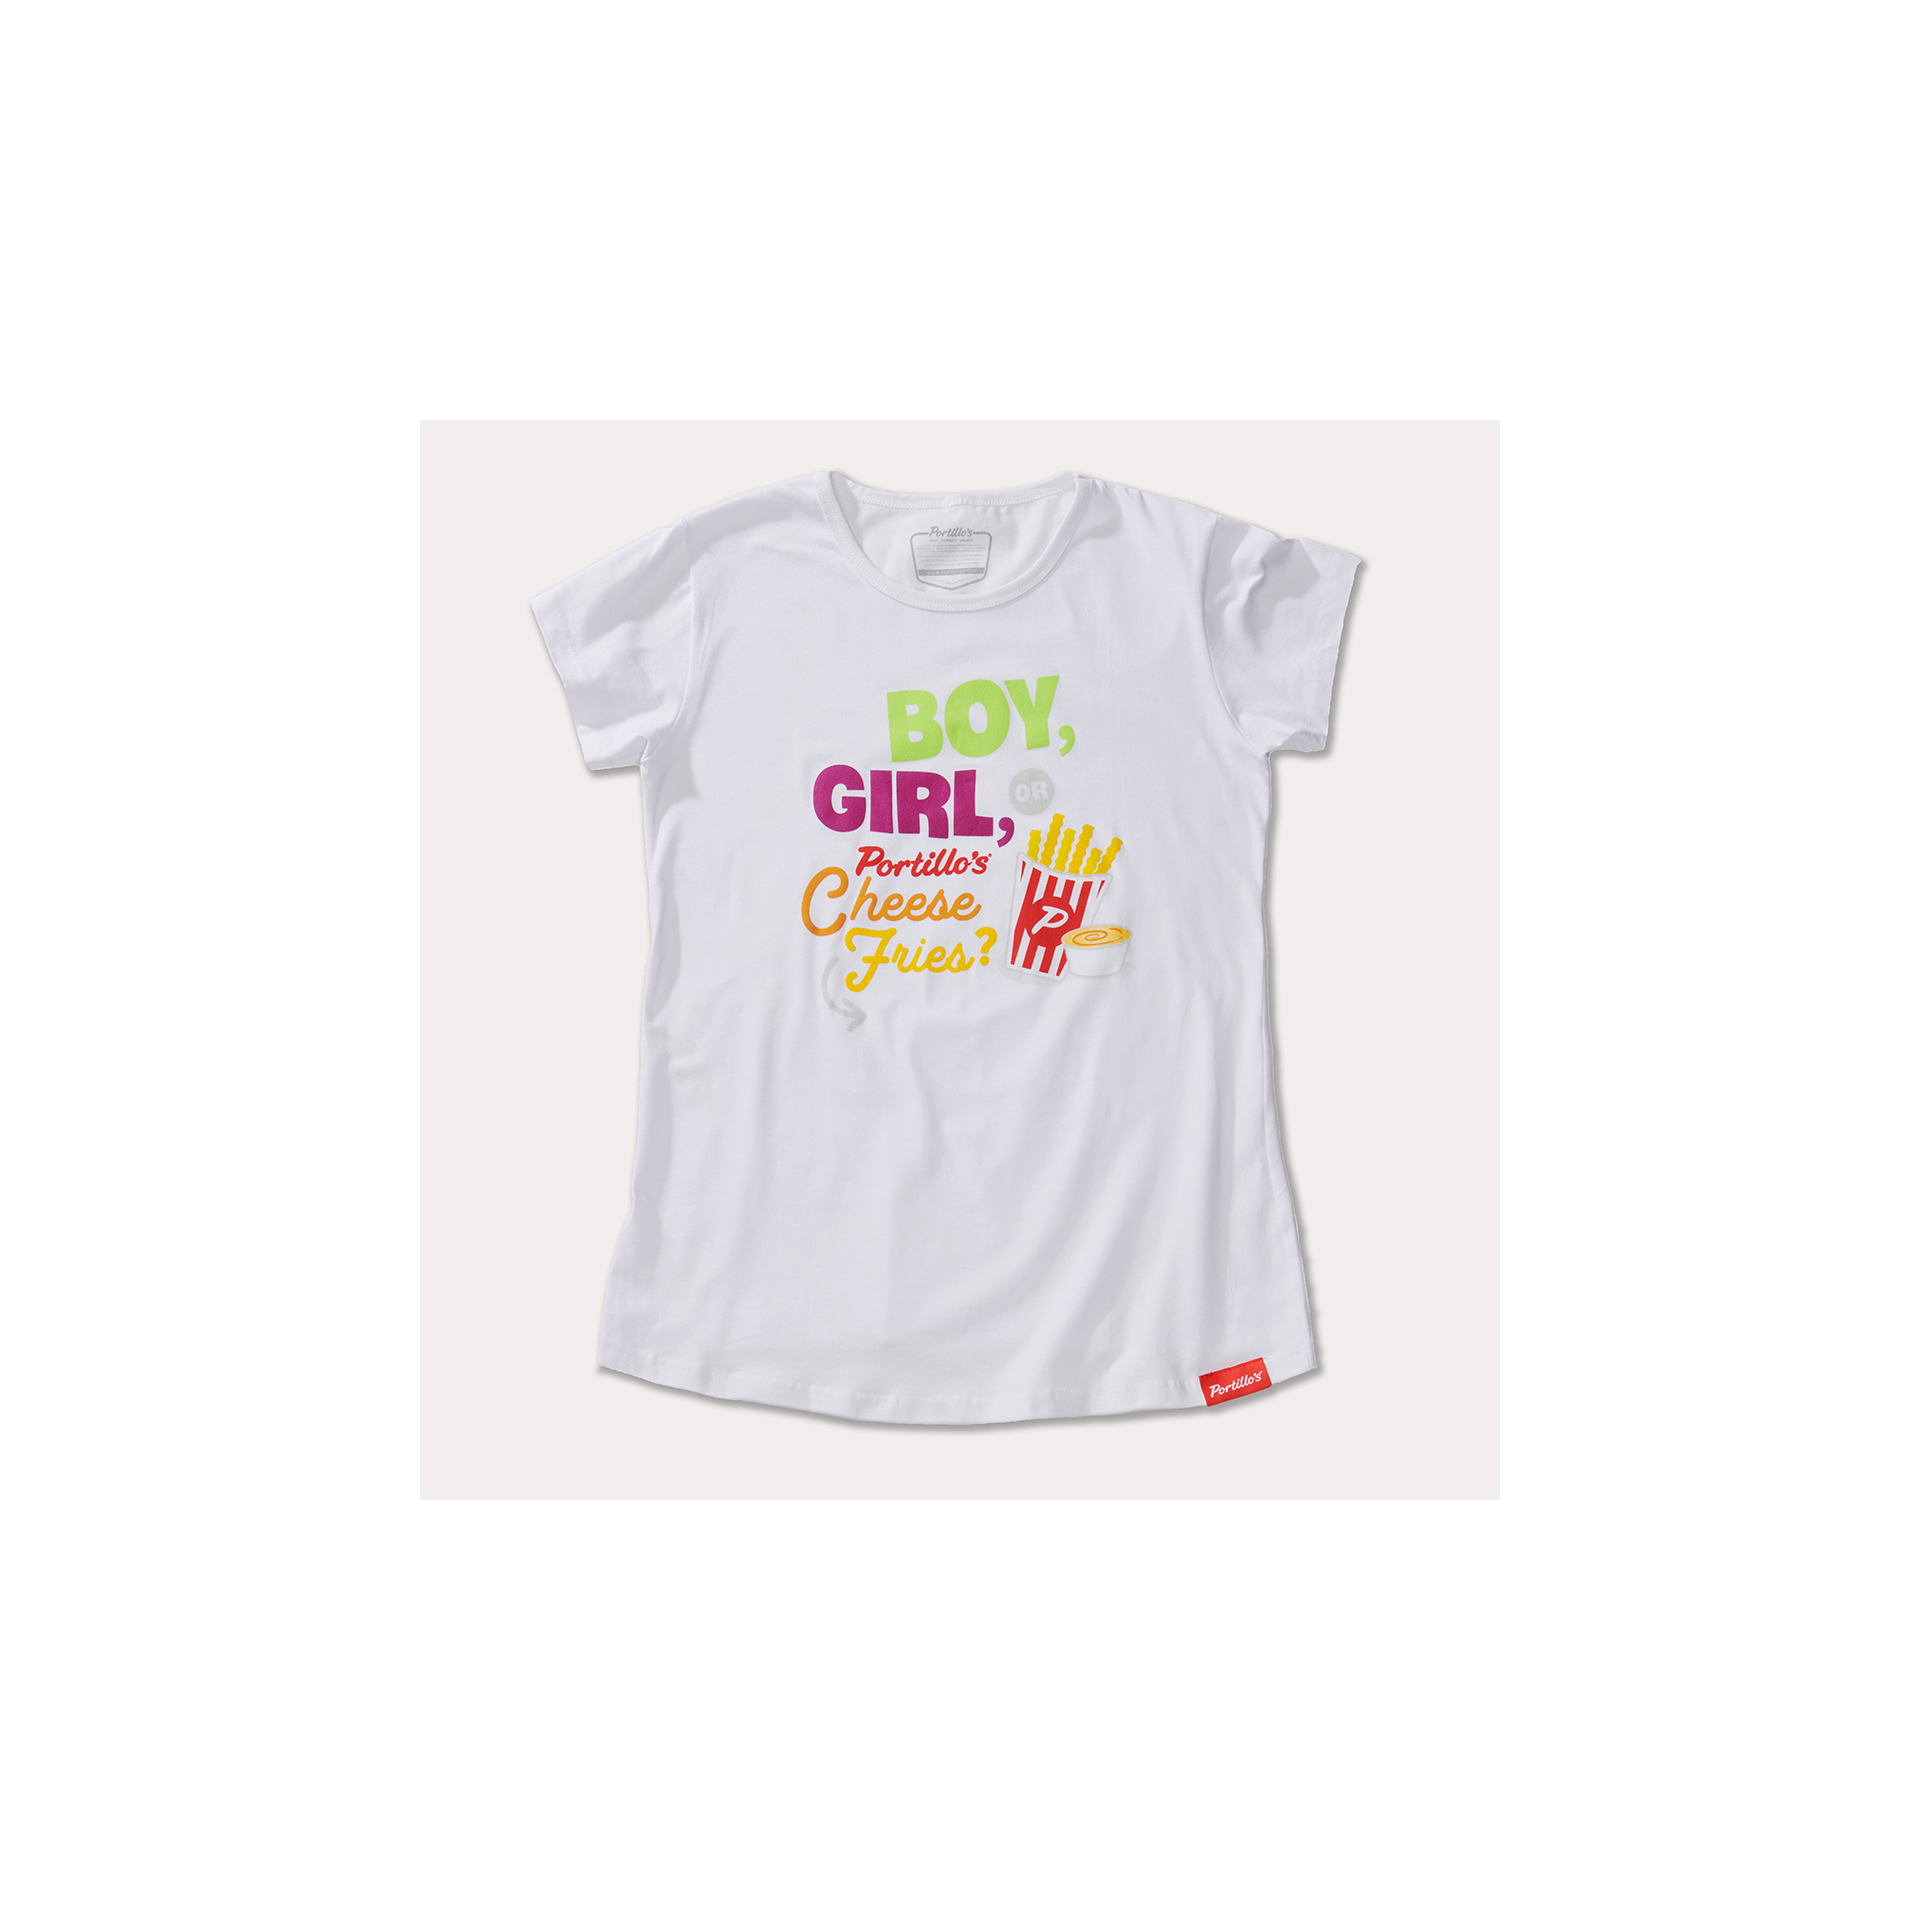 Portillo's Pregnancy Cravings T-Shirt | Portillo's